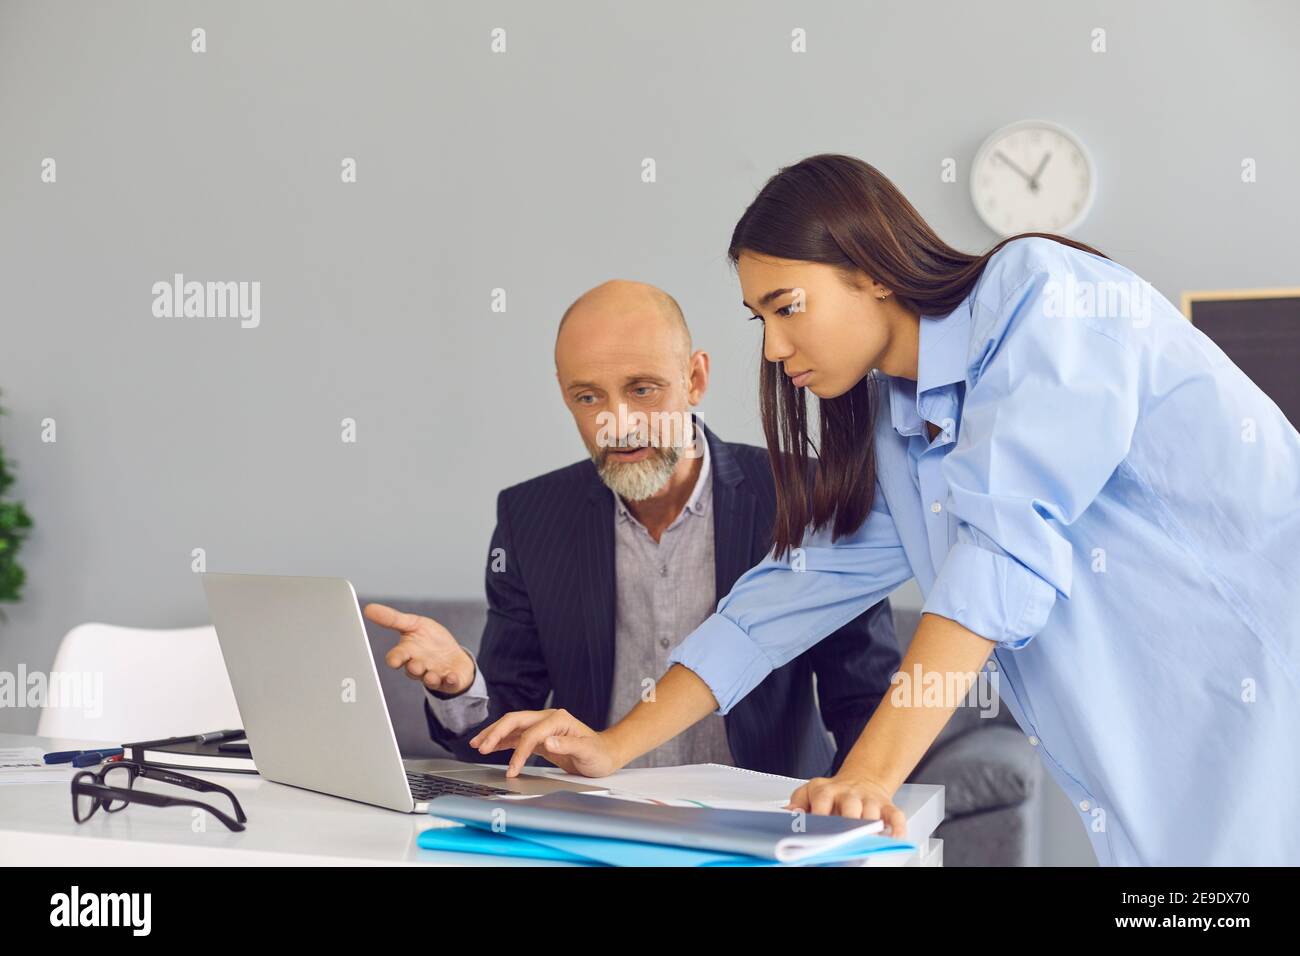 Junge Büroangestellte, die dem älteren männlichen Kollegen hilft, das Problem auf dem Laptop zu lösen. Stockfoto